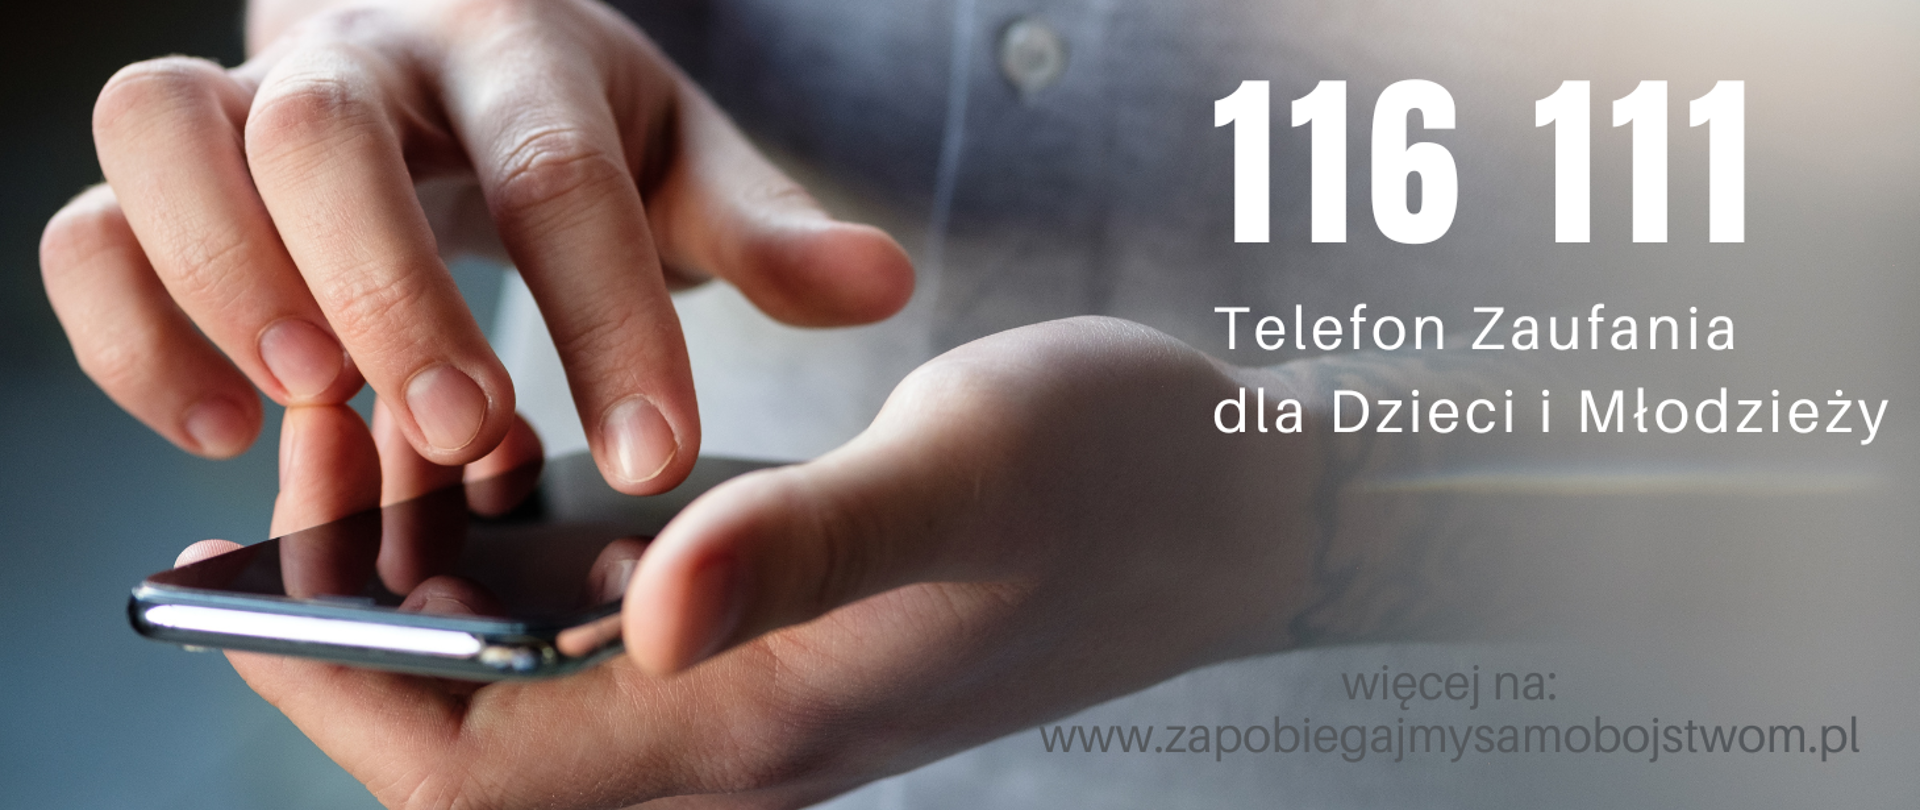 Zdjecie, szare kolory telefon komórkowy w dłoniach podczas wybierania numeru z prawej strony biały napis 116 111 telefon zaufania dla dzieci i młodzieży więcej na www.zapobiegajmy samobójstwom.pl
